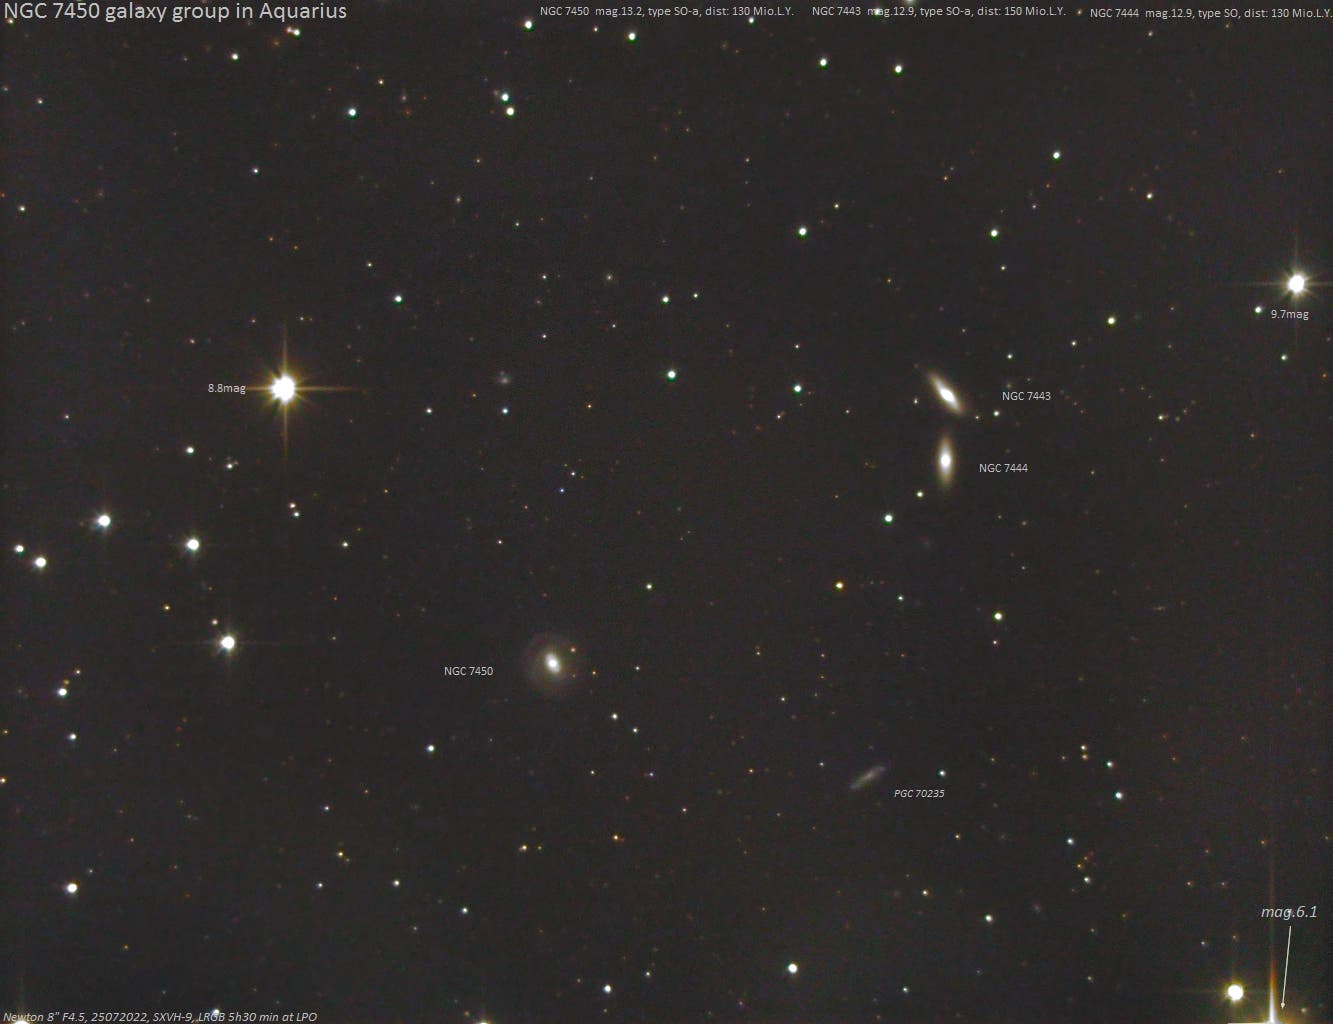 Drei SO-Galaxien im Sternbild Wassermann   (Bezeichnungen)